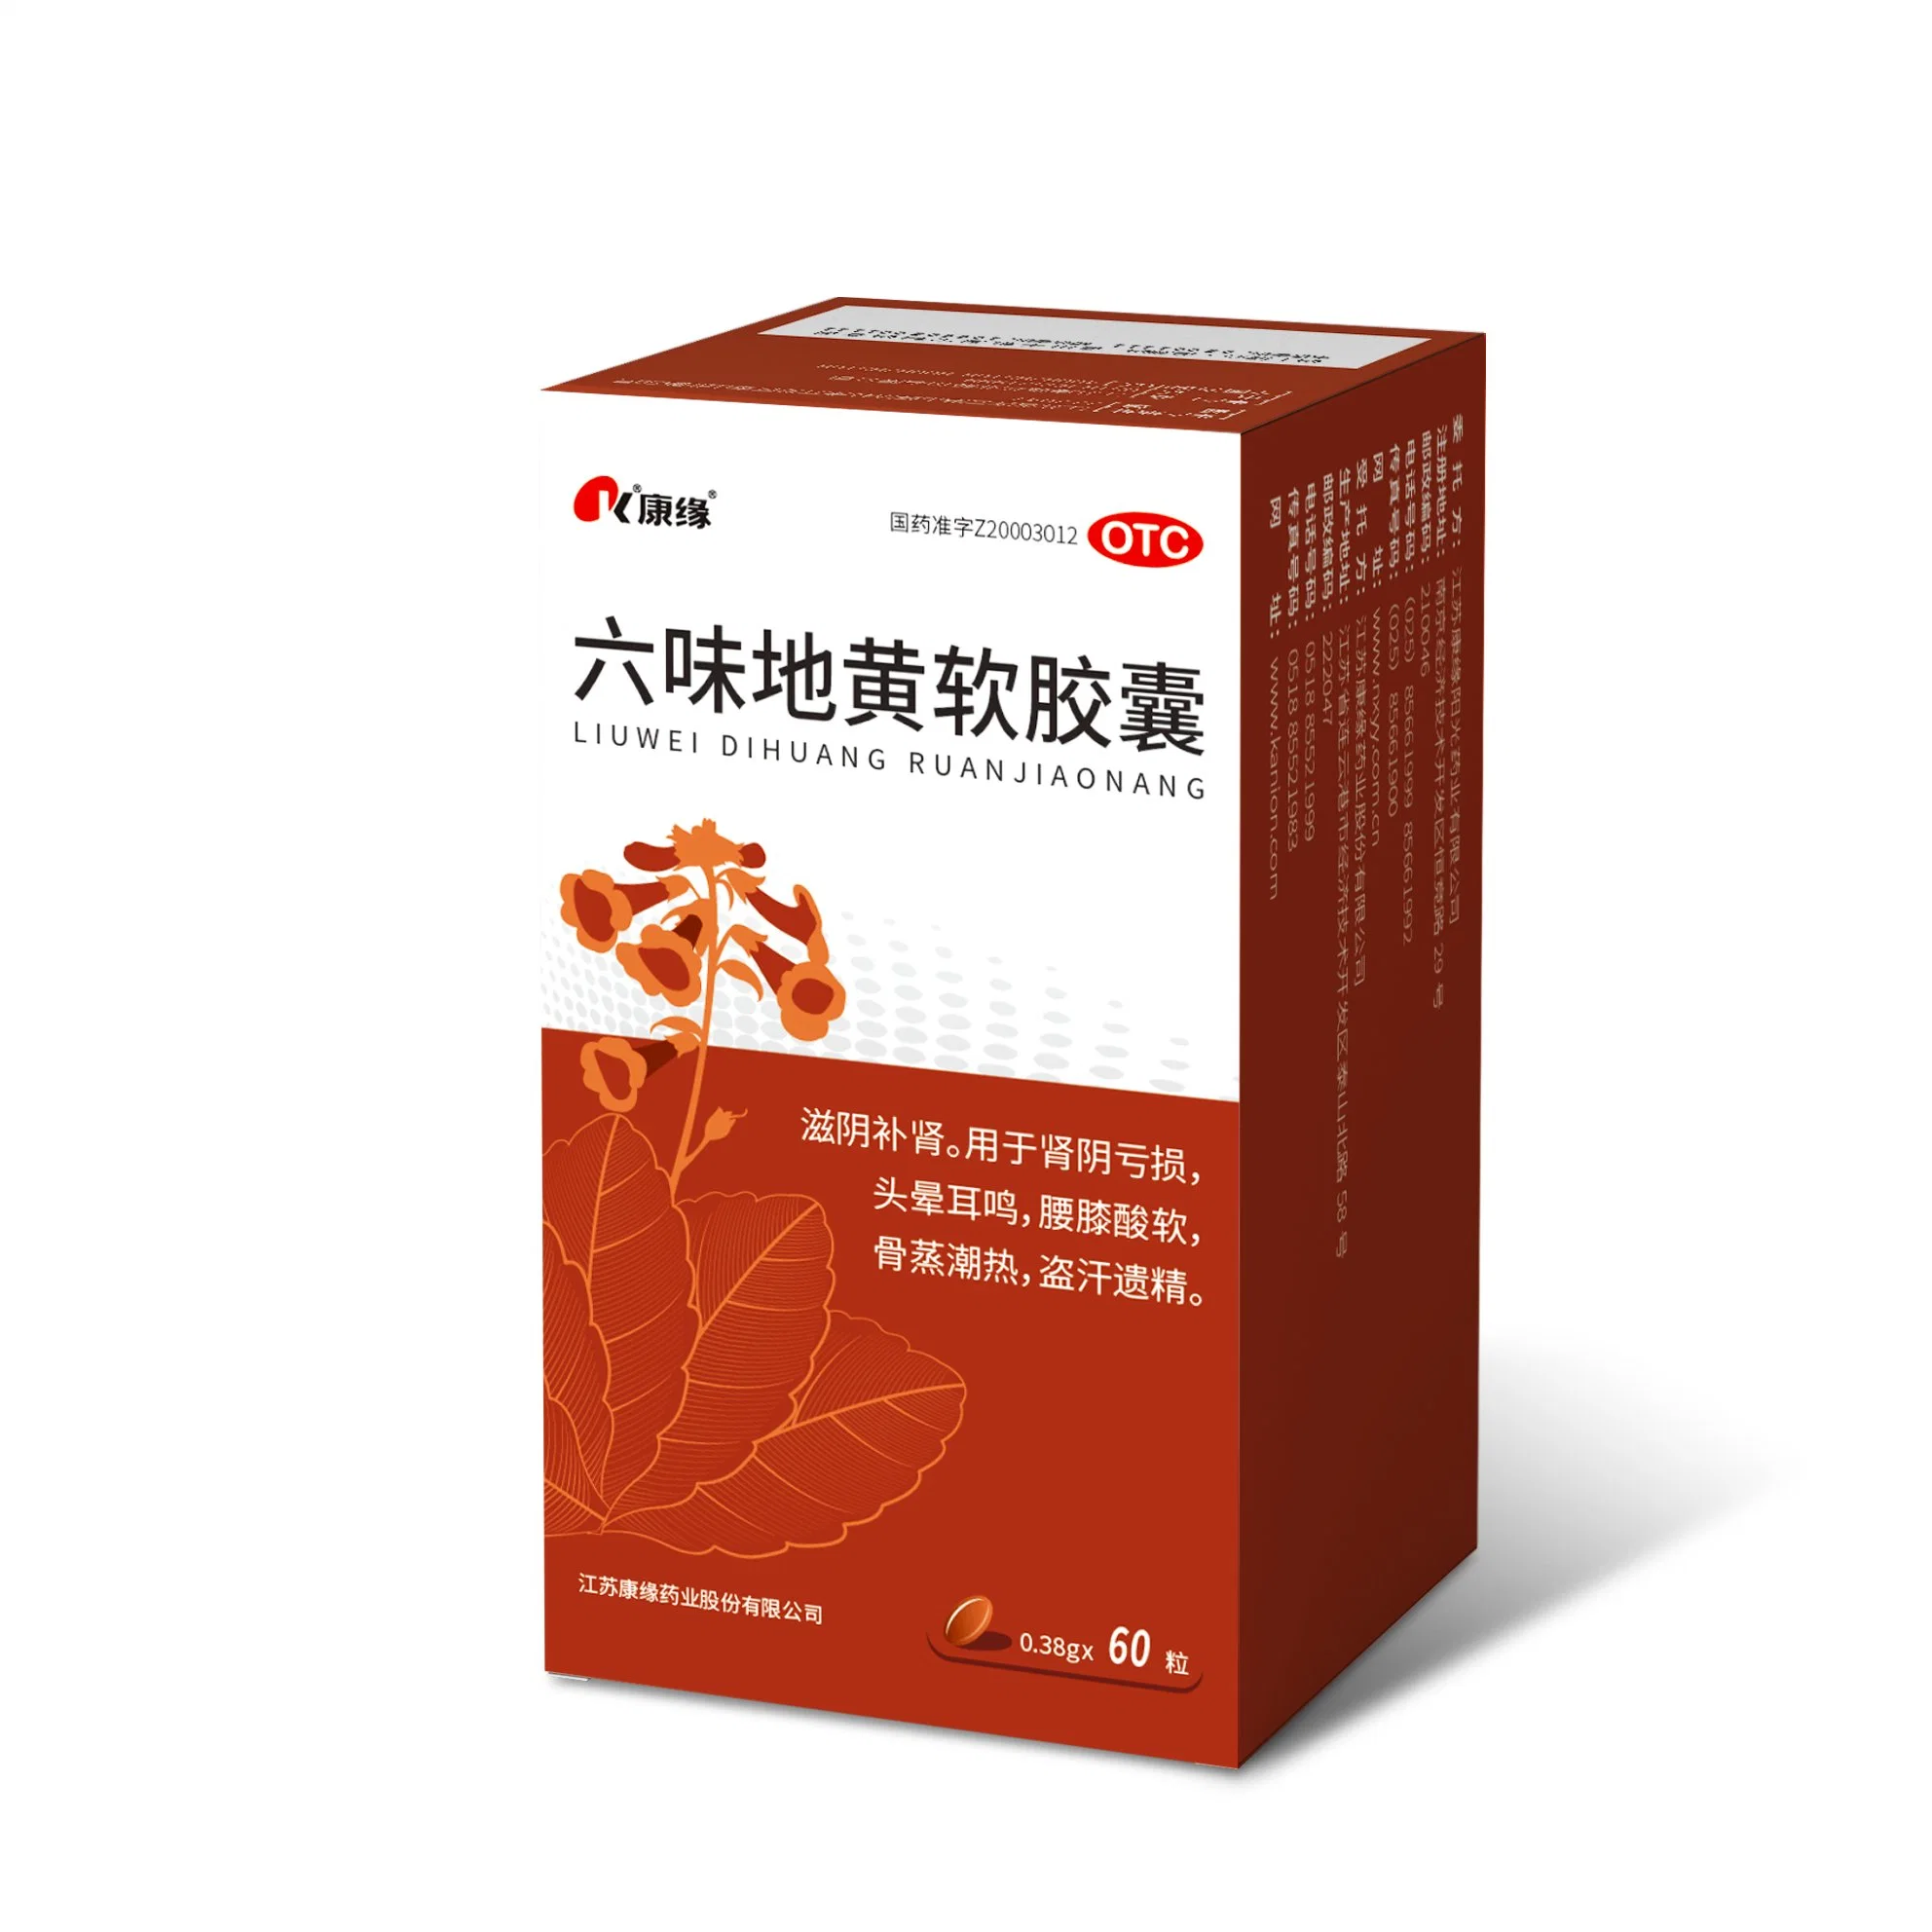 Hochwertige Kräuter Chinesische Medizin für Tonic Class Verwenden Sie Chinesisch Lieferant Für Kräuterextrakt